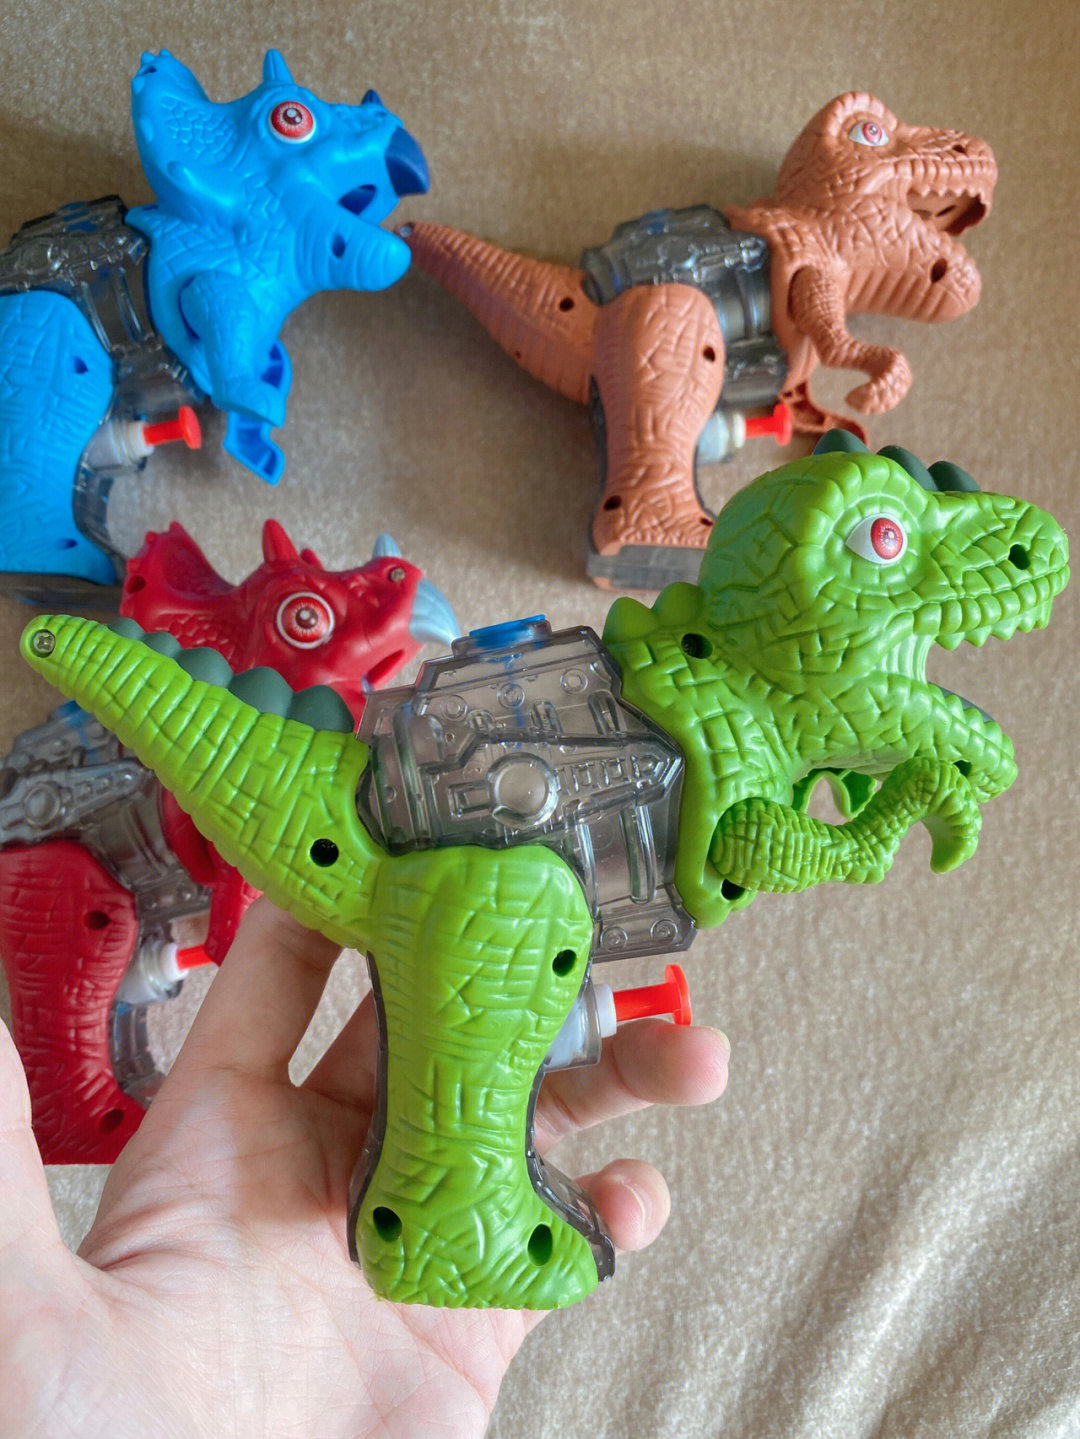 有儿子的快上车男孩最爱的小恐龙玩具分享